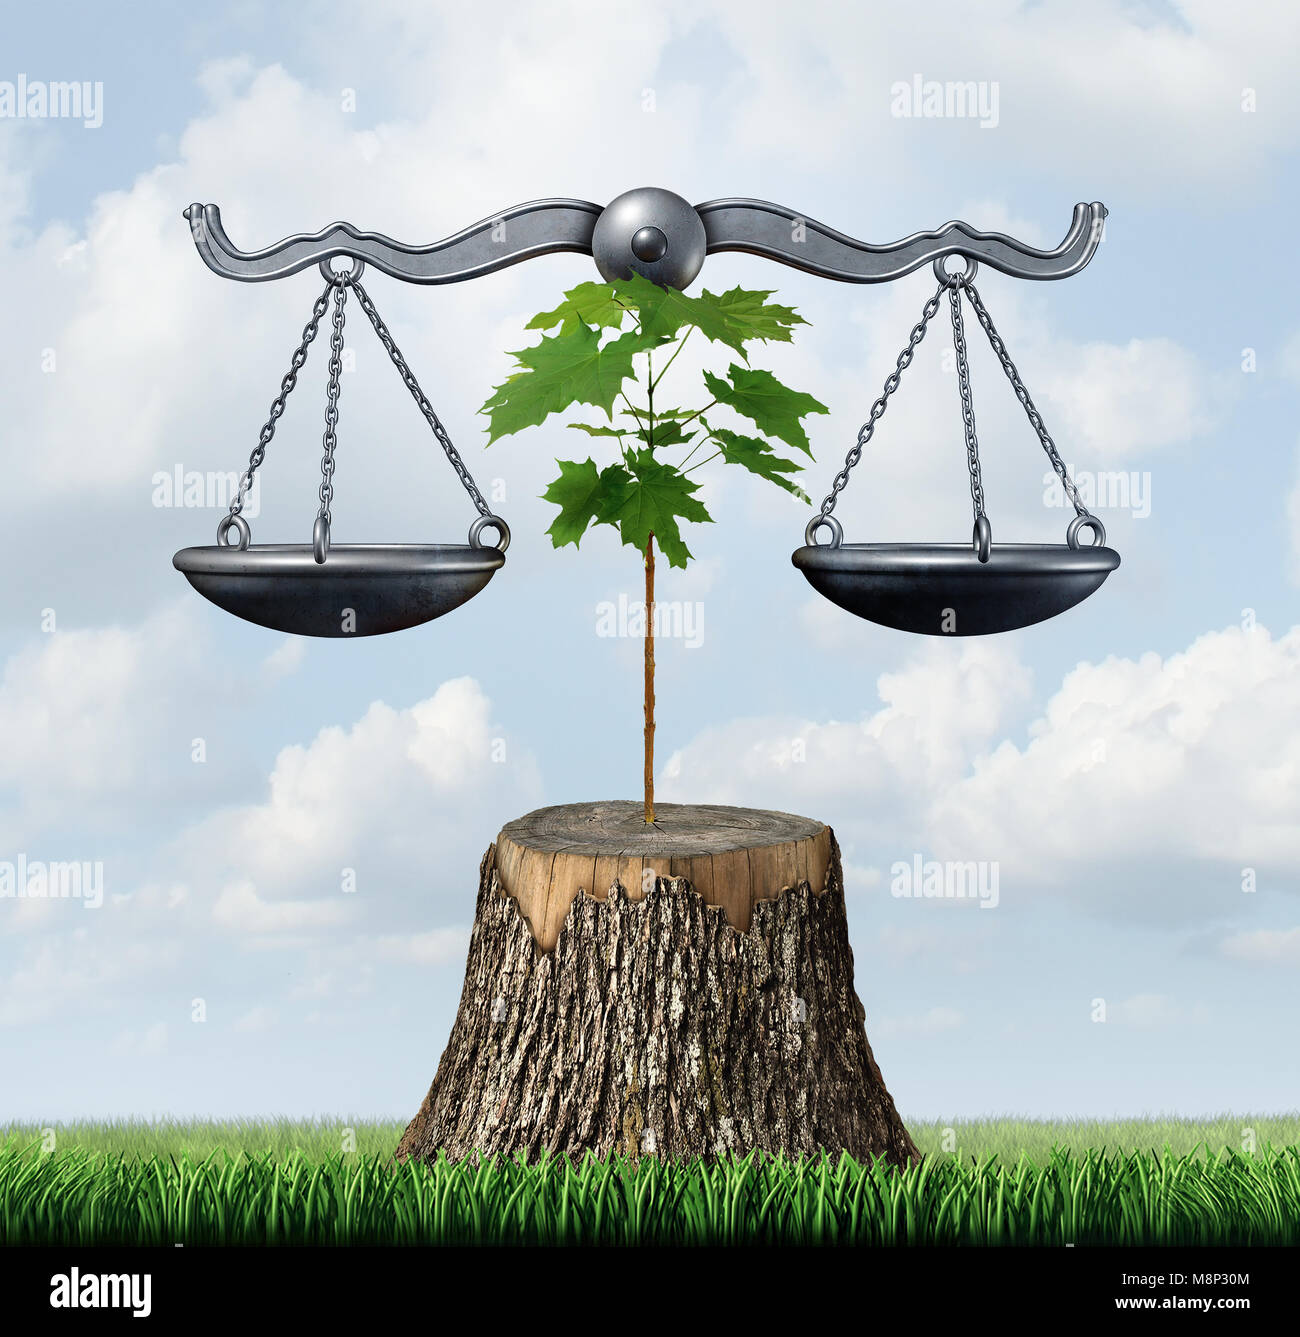 Umwelt und Natur ressourcen rechtliche Schritte Konzept als Gerechtigkeit durch ein Bäumchen auf einer gehackten Baum als Schutz des Lebensraums unterstützt. Stockfoto